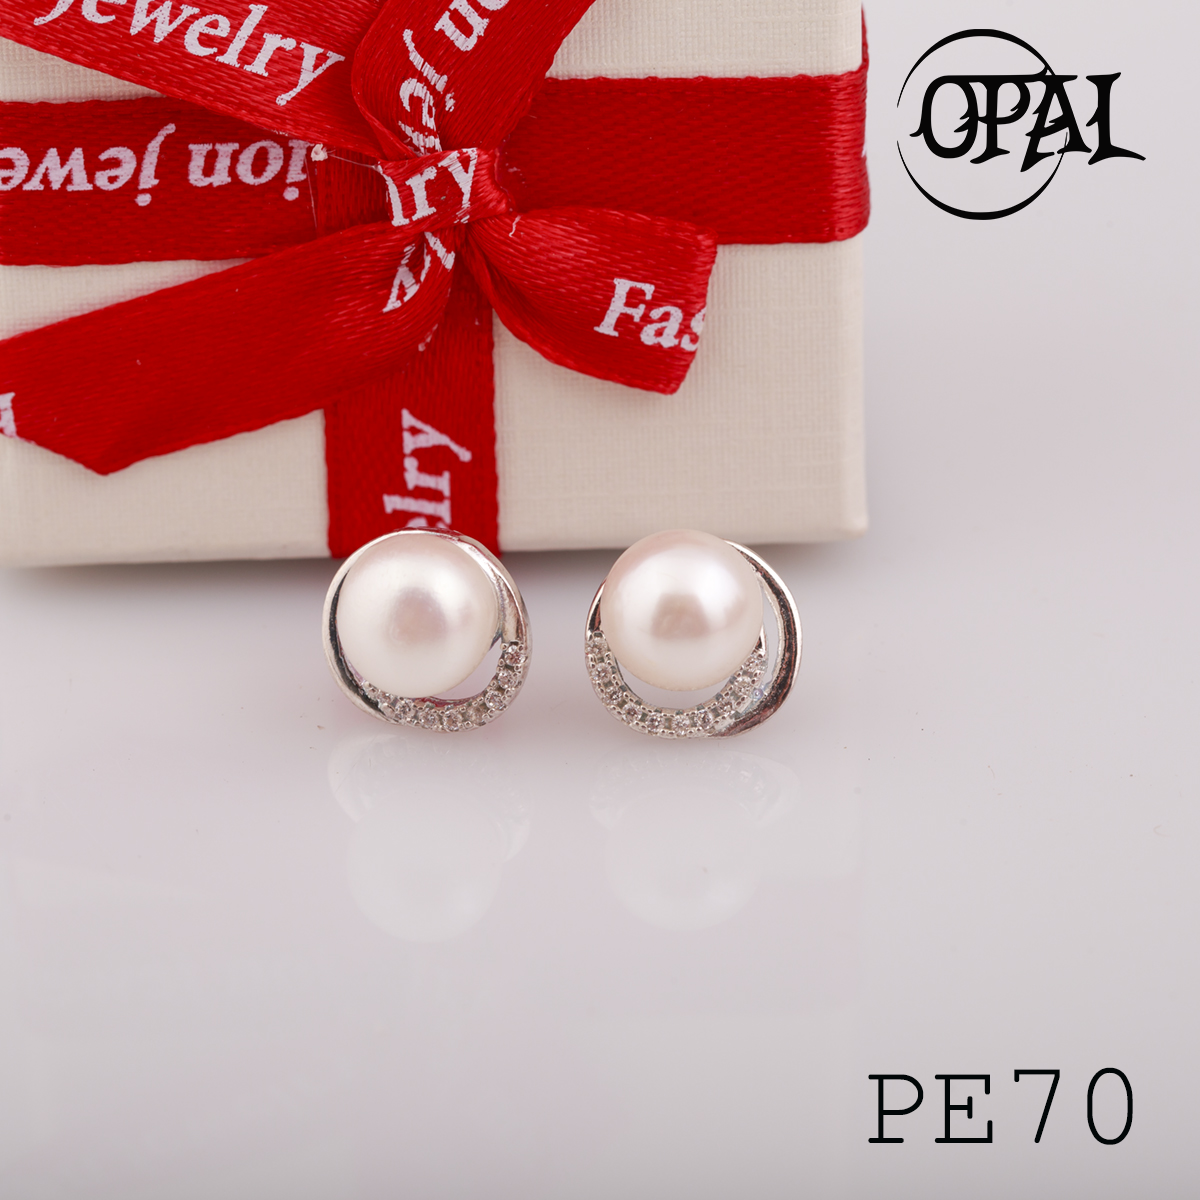  PE70 - Hoa tai bạc đính ngọc trai OPAL 